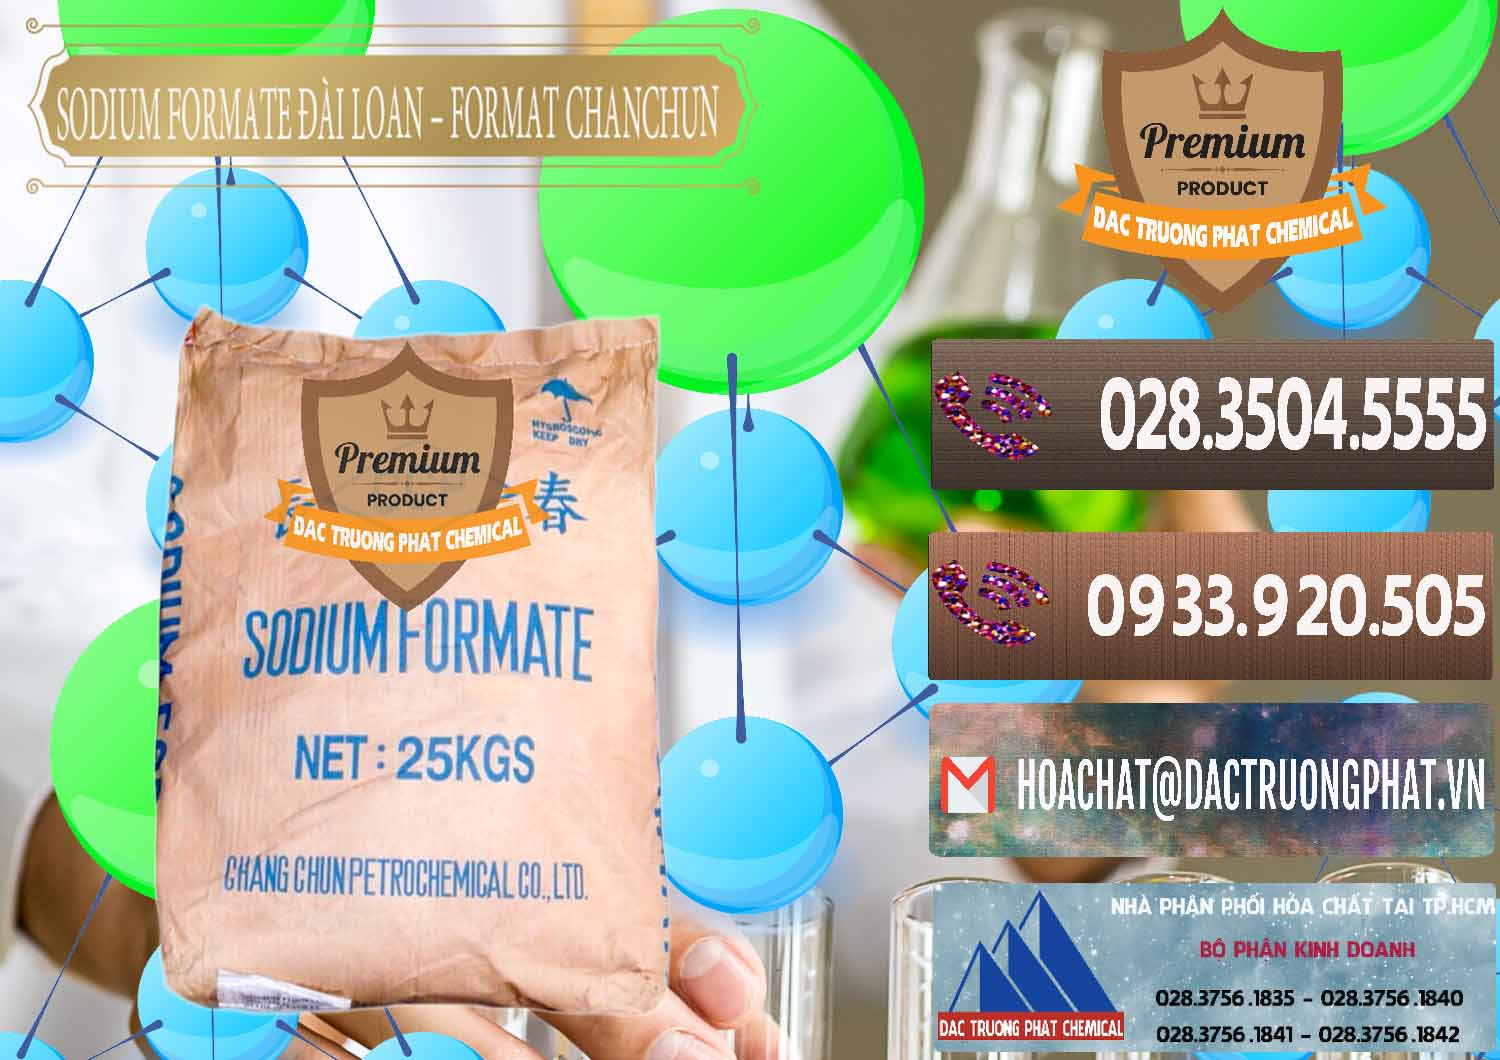 Cty chuyên bán và cung ứng Sodium Formate - Natri Format Đài Loan Taiwan - 0141 - Công ty phân phối và cung cấp hóa chất tại TP.HCM - hoachatviet.net